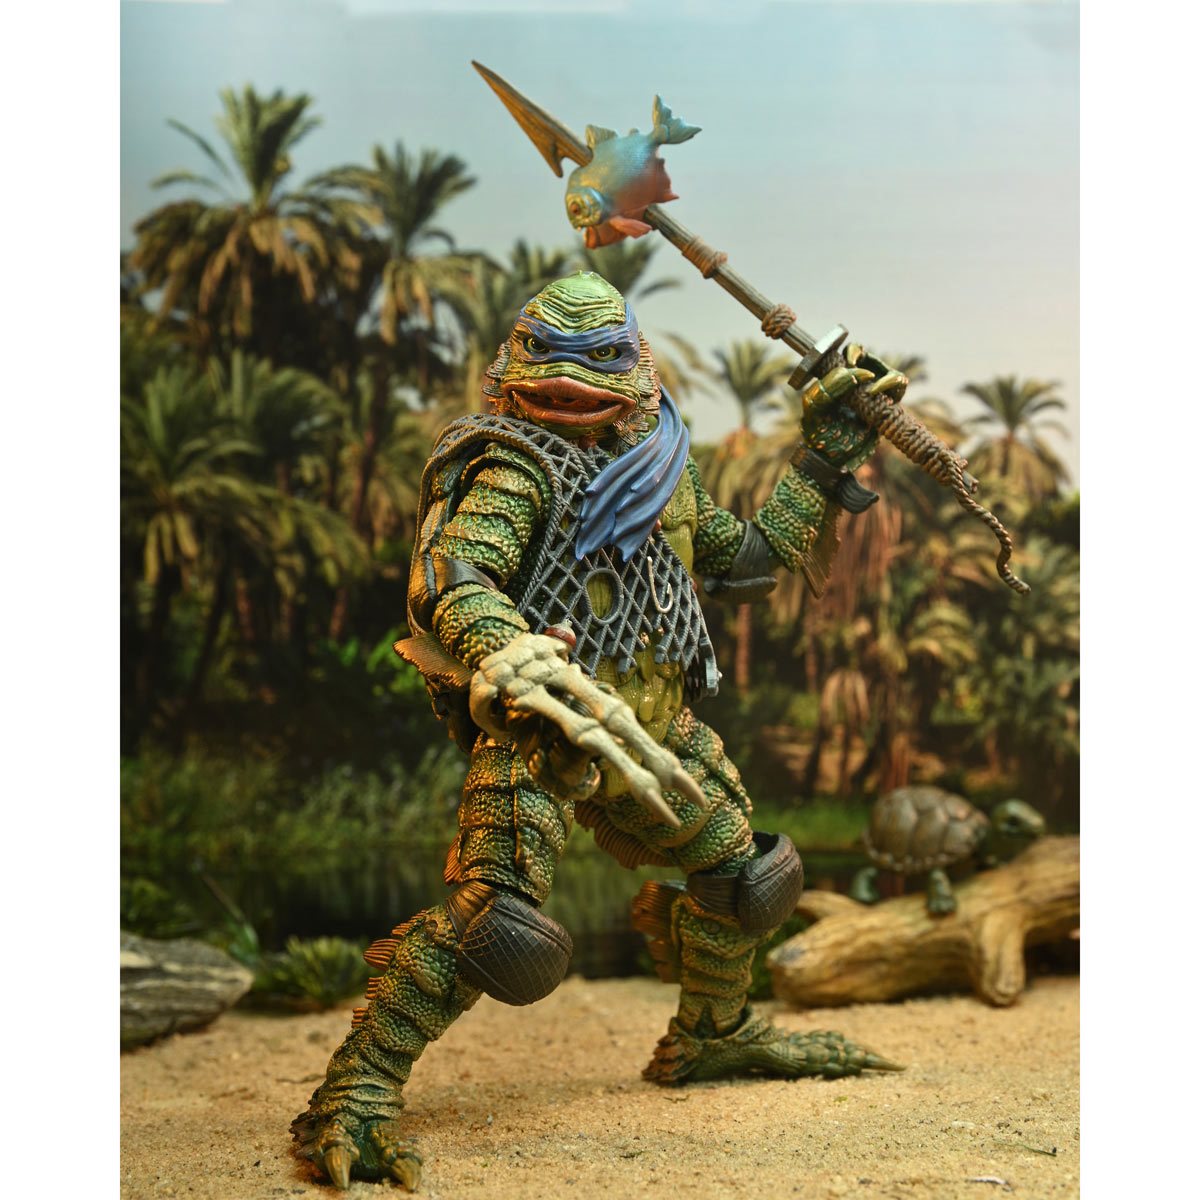 Universal Monsters x Teenage Mutant Ninja Turtles Ult. Leonardo as Creature  from the Black Lagoon 7-Inch Scale Figure